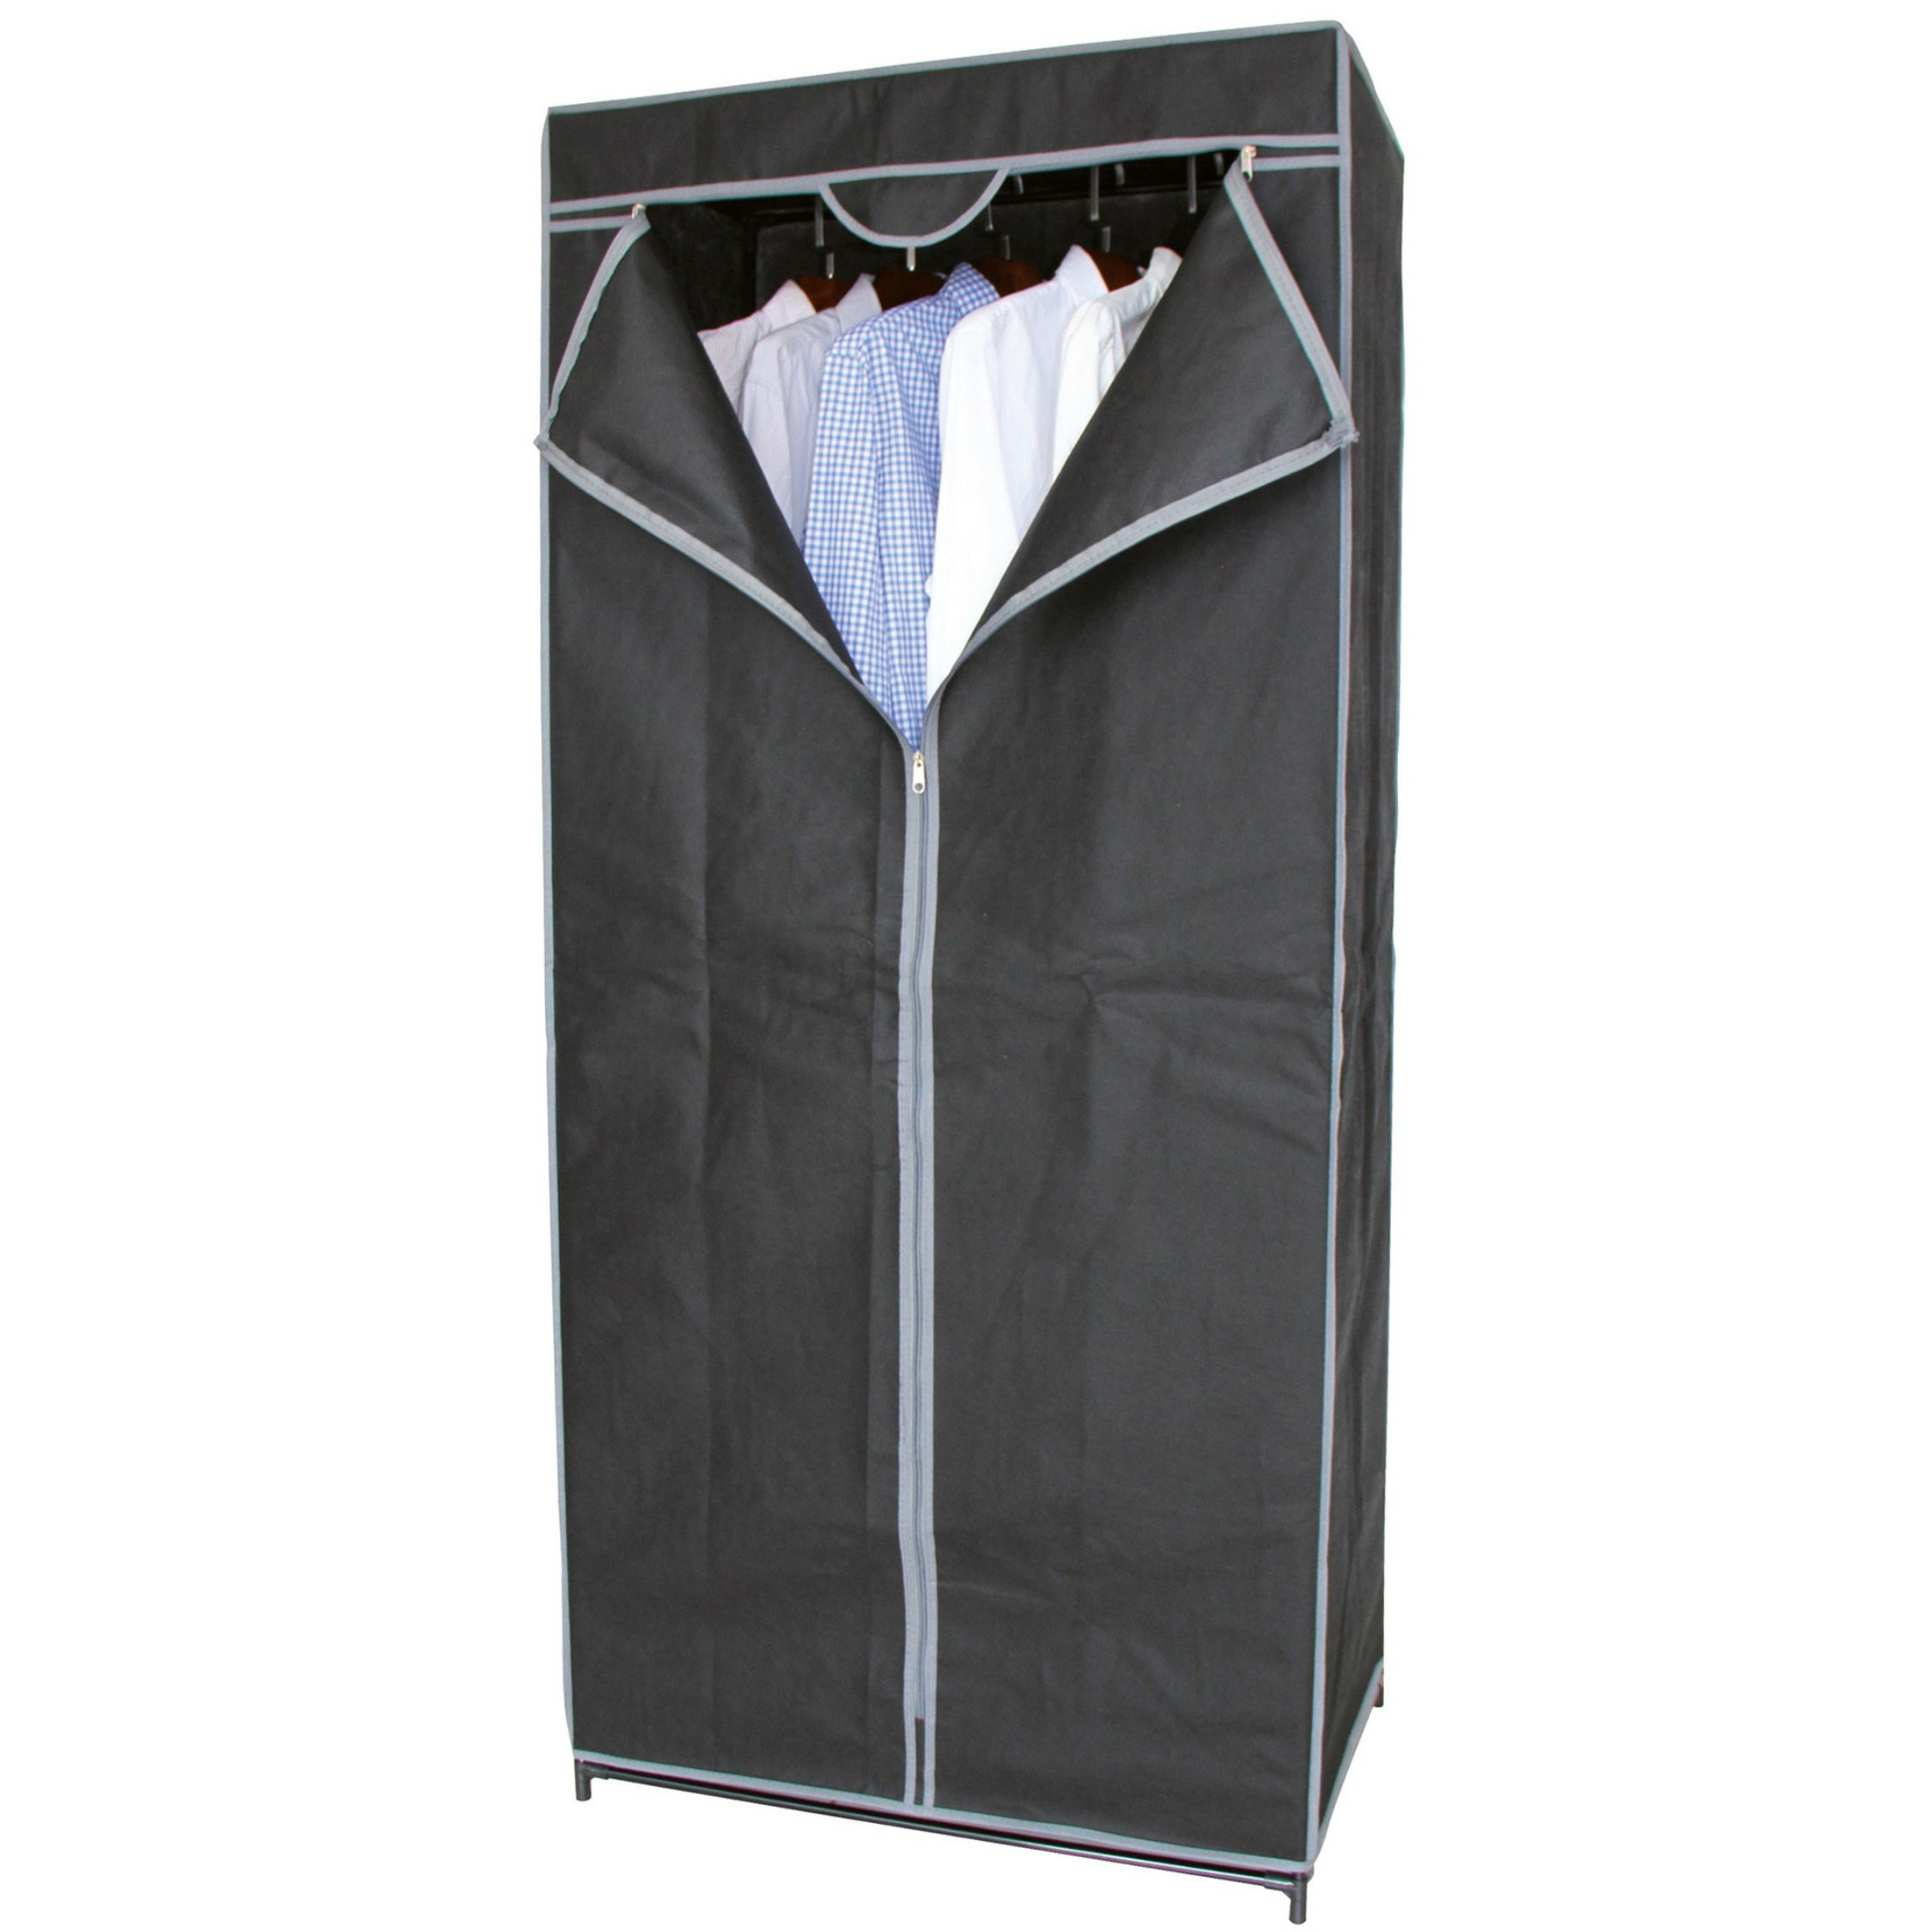 Mobiele kledingkast met hang stang opvouwbaar grijs 70 x 45 x 160 cm